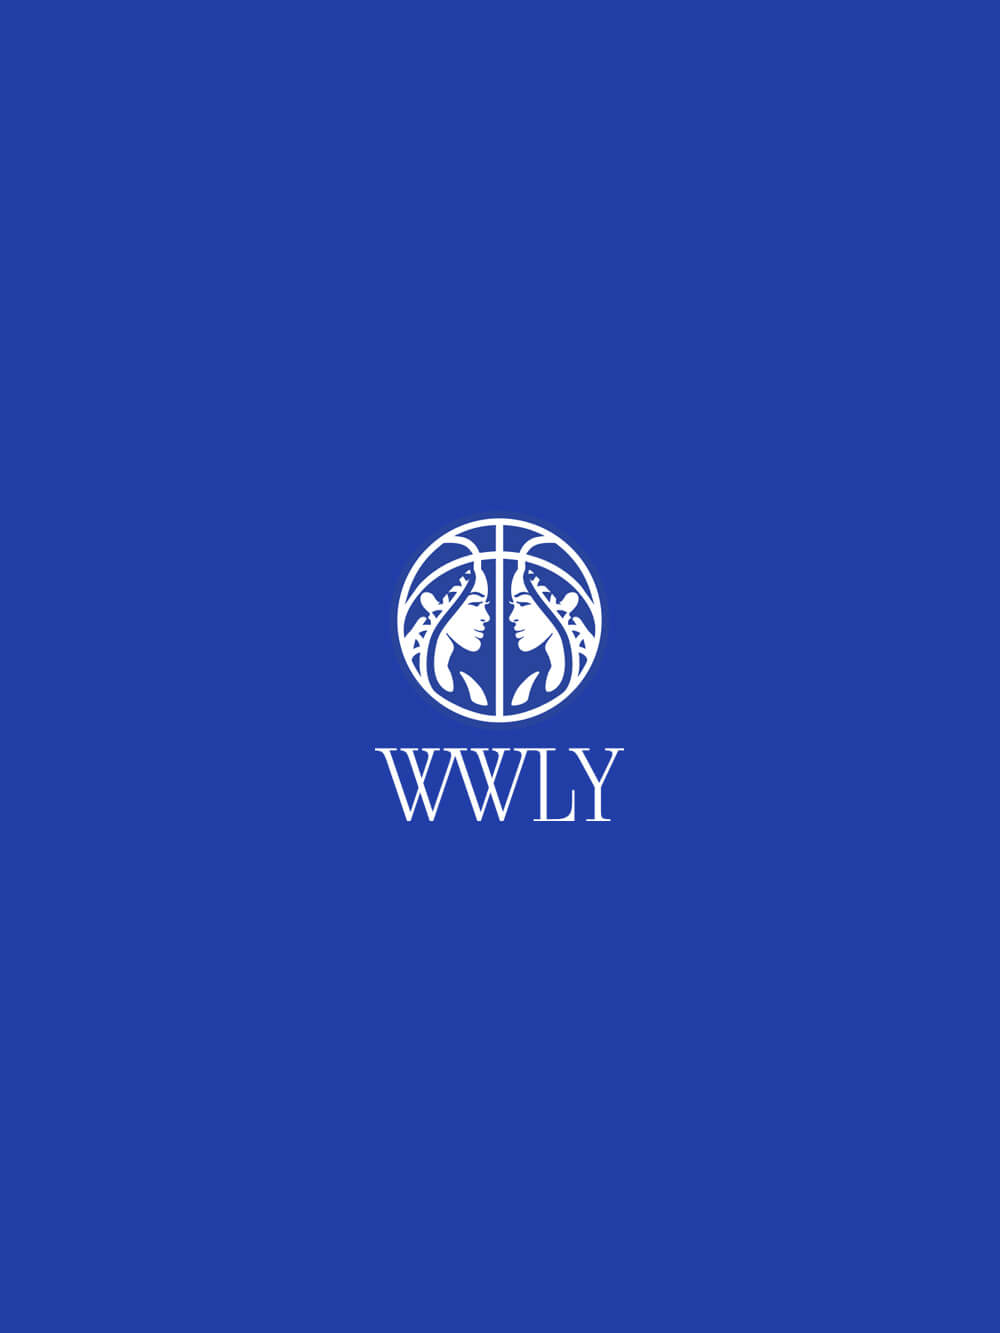 WWLY-logo-2-1333px